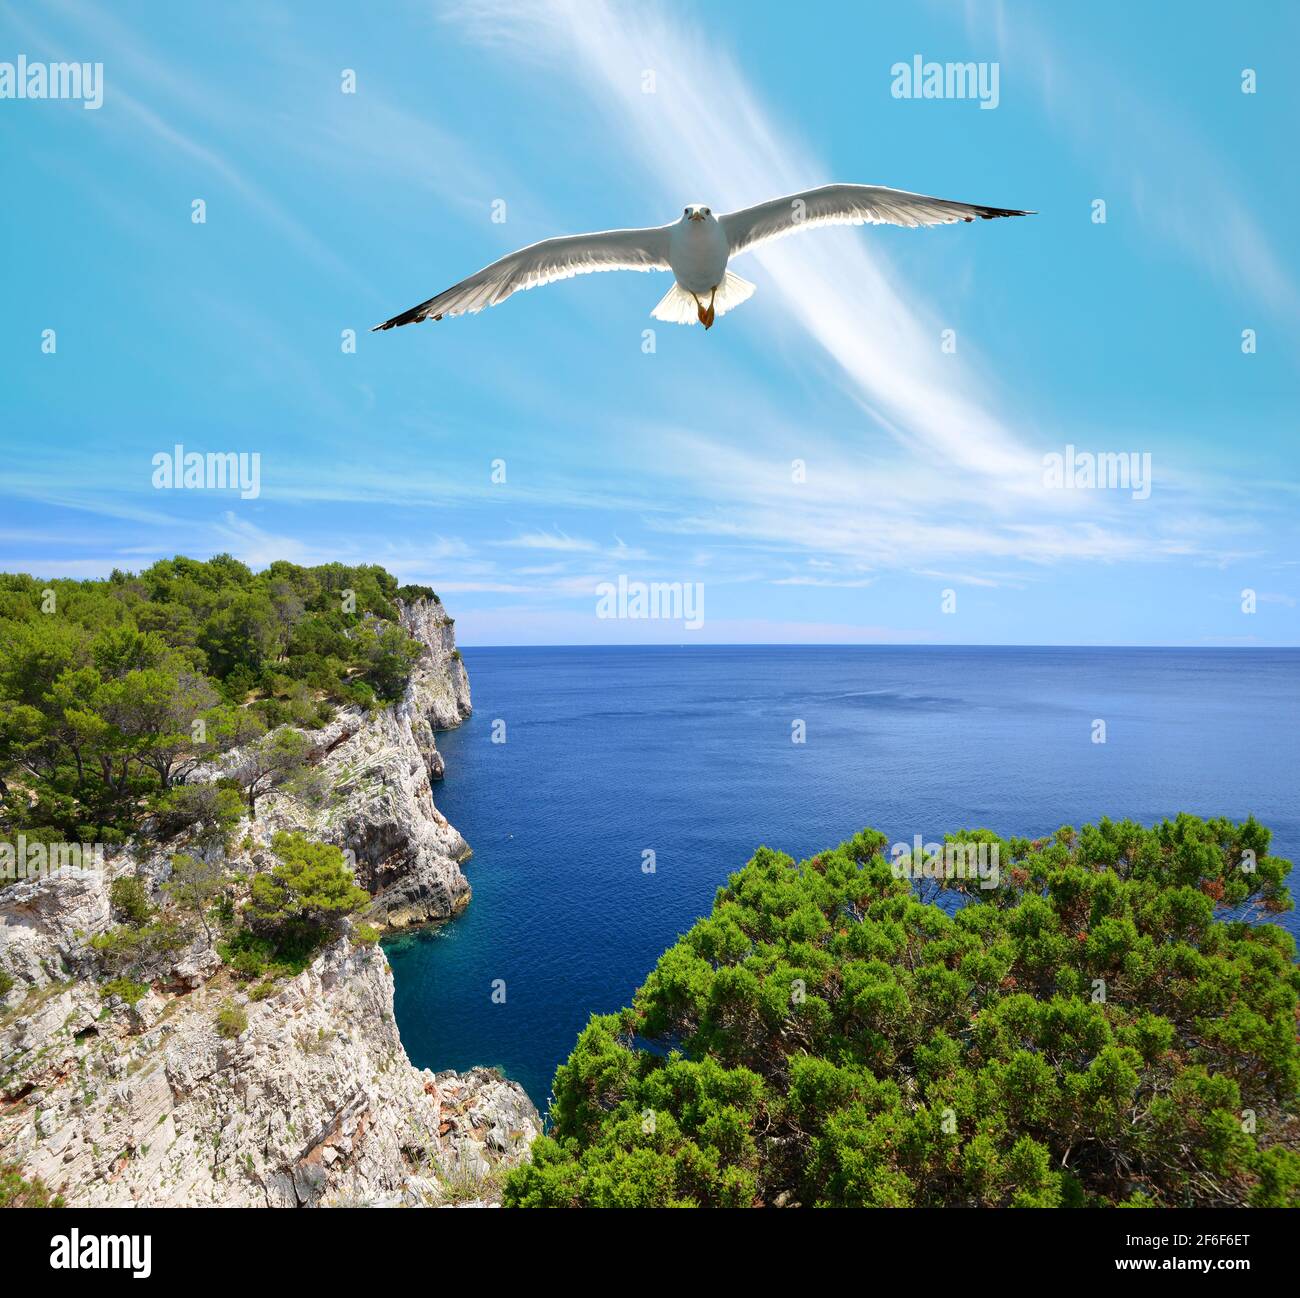 Seagull sopra le scogliere nel Parco Naturale di Telascica, Dugi Otok isola nel mare Adriatico. Croazia. Foto Stock